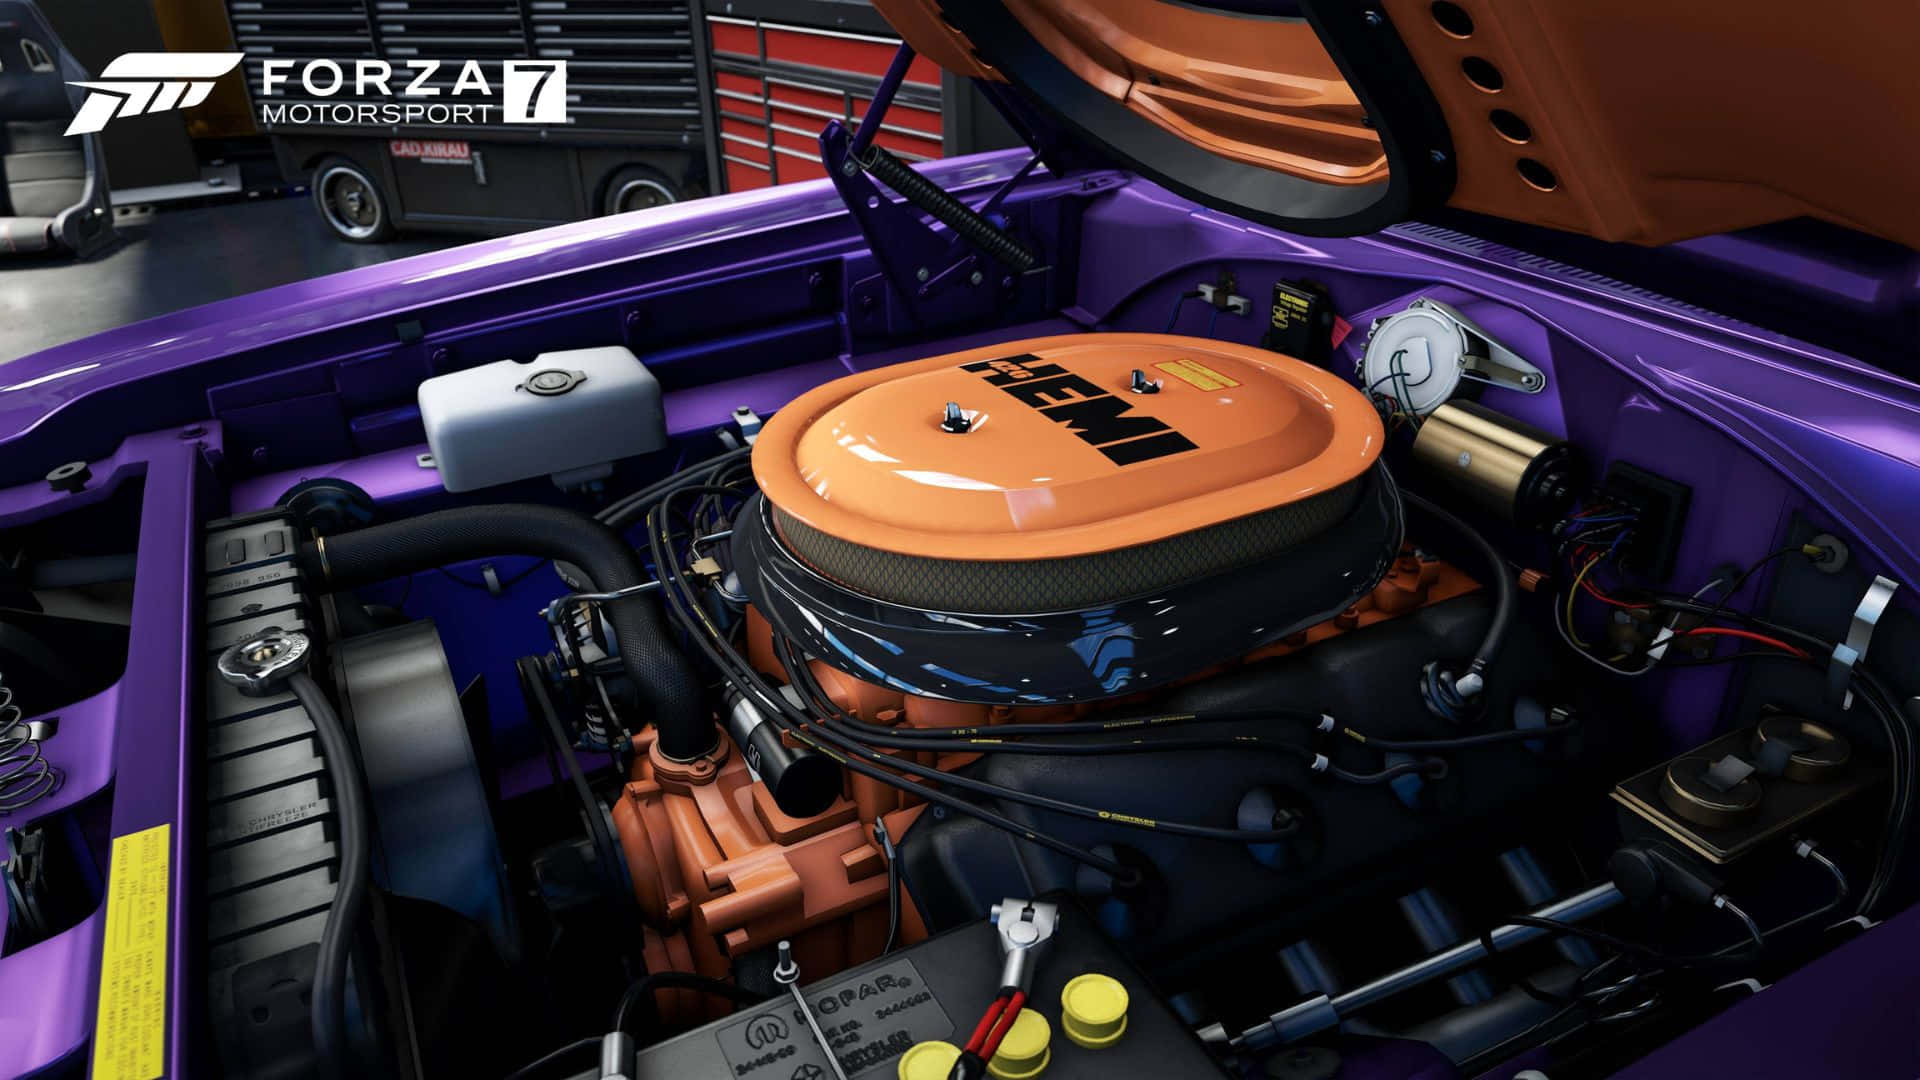 Hdbakgrundsbild För Forza Motorsport 7 Med Bilmotor